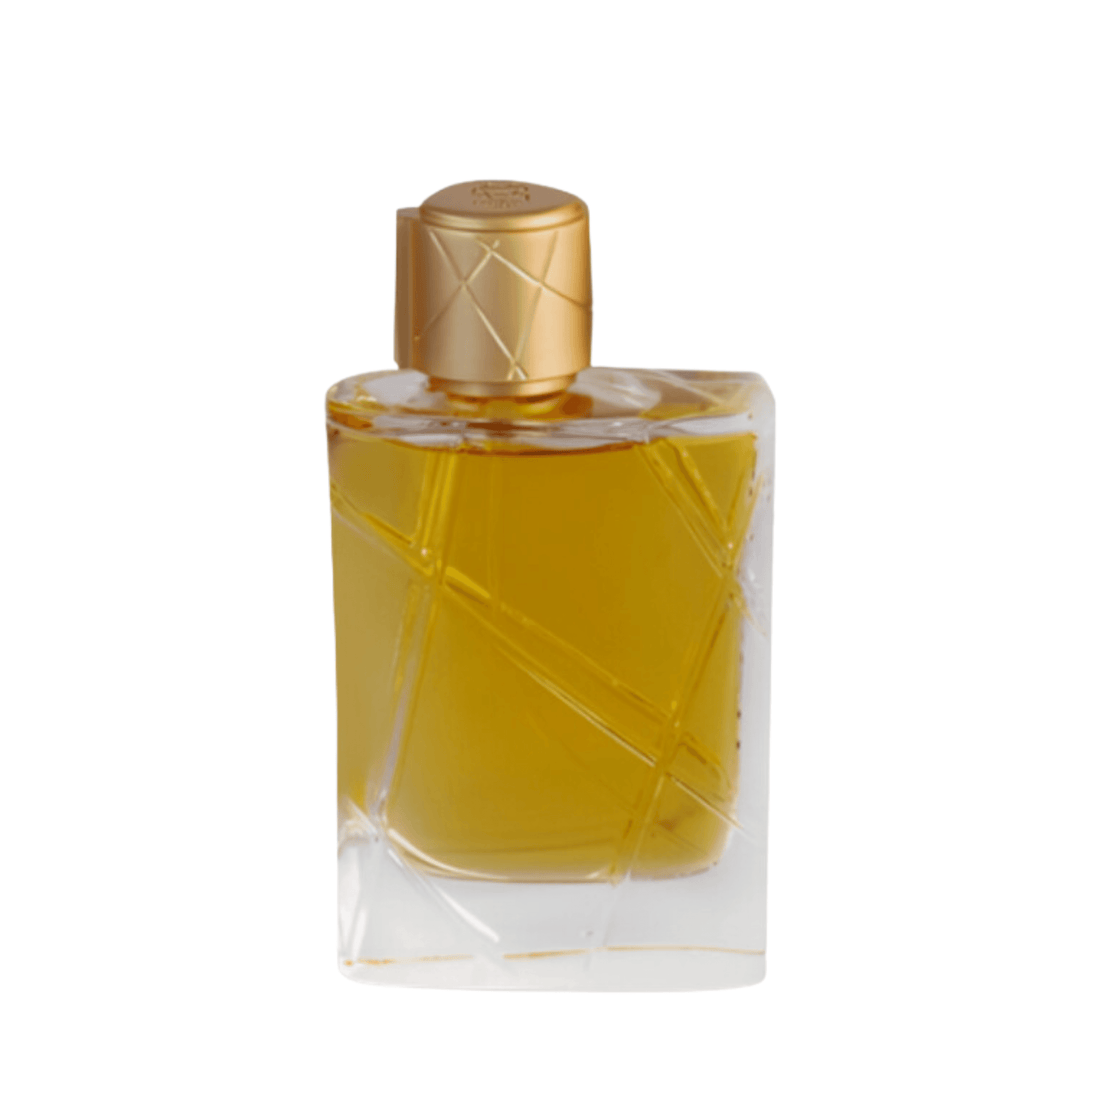 Elegant Delicate By Aurora Eau de Parfum - 100ml Perfume For Women's